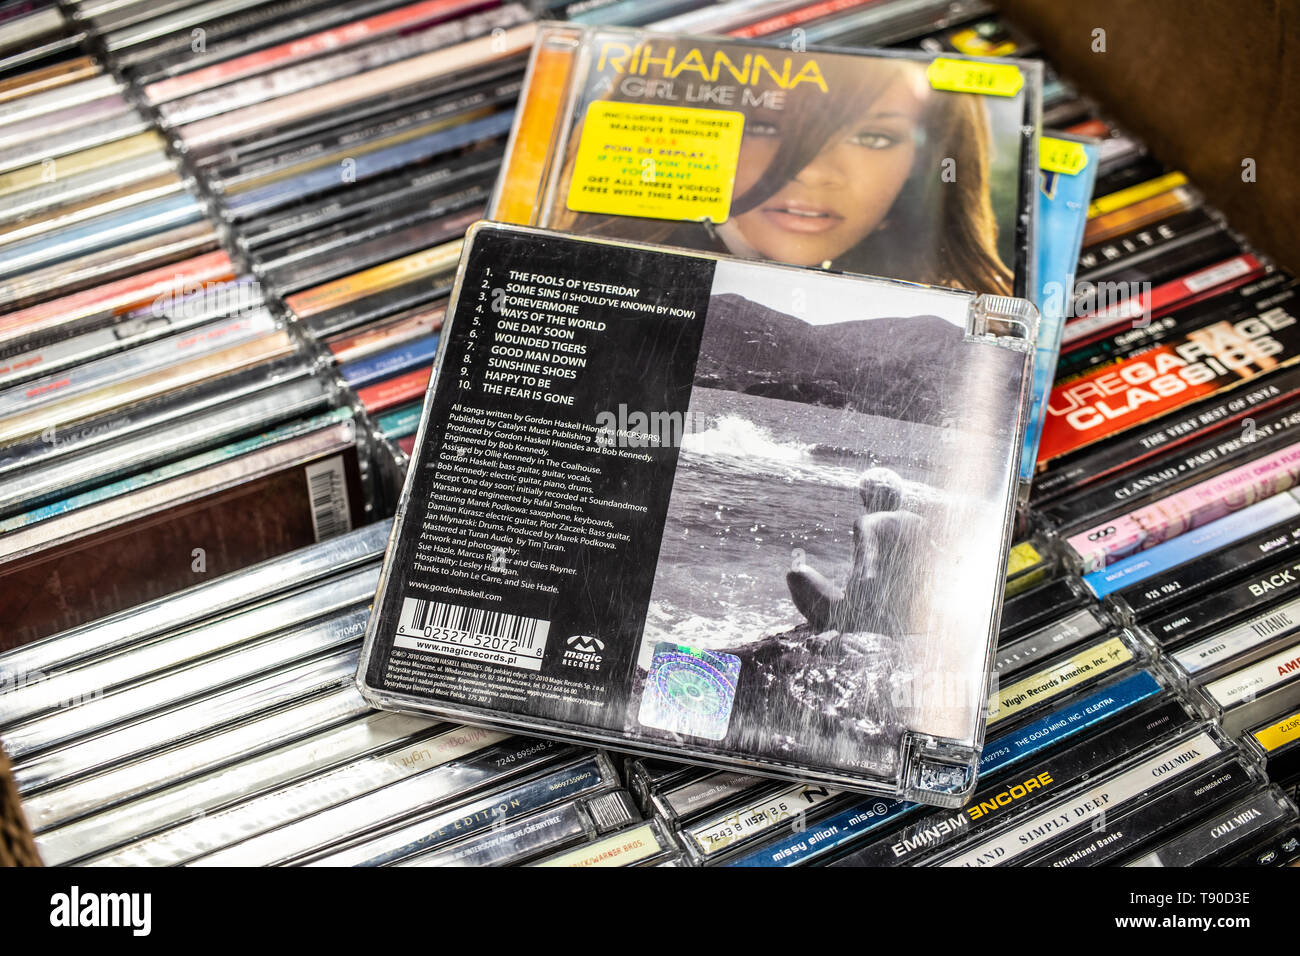 Nadarzyn, Polonia, 11 Maggio 2019: Gordon Haskell Hionides CD album un giorno presto 2010 sul display per la vendita, famoso musicista inglese e cantautore, cd Foto Stock